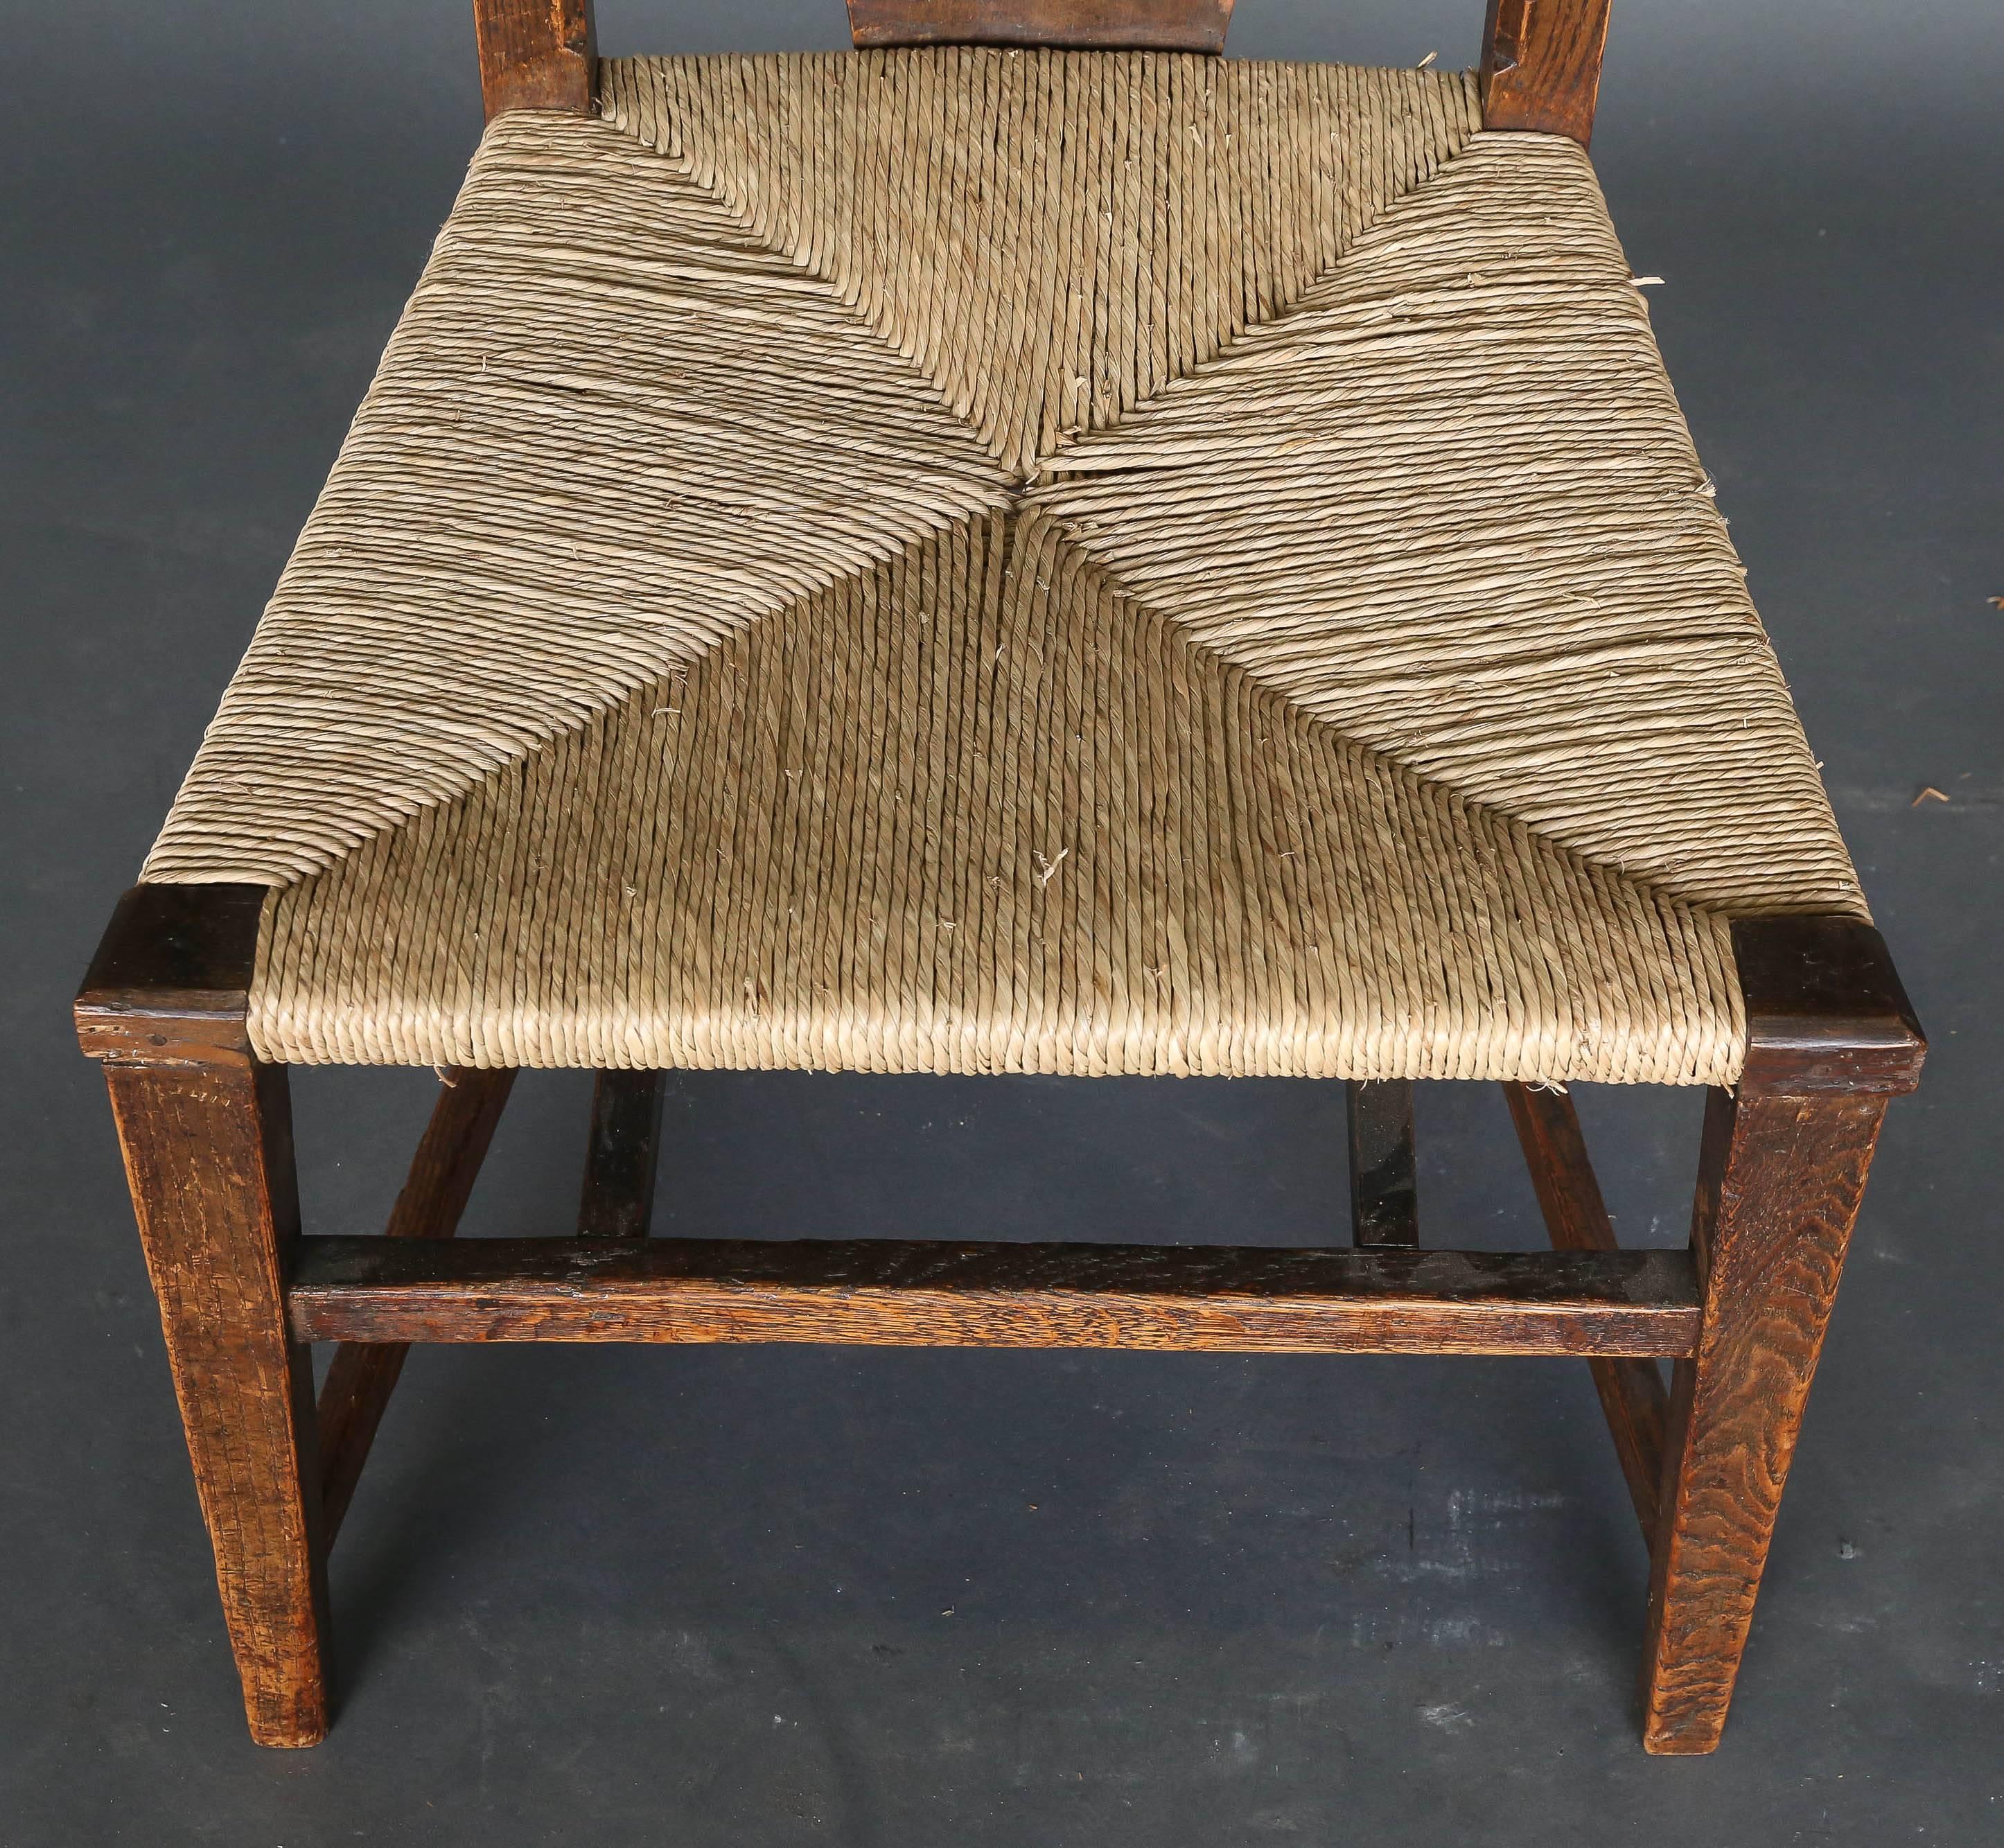 Dieses Paar Abingwood-Stühle aus Eschenholz wurde 1896 von George Walton in Zusammenarbeit mit Charles Rennie Mackintosh entworfen und verwendet.   für das Billardzimmer von Miss Cranston's tea rooms in der Buchanan Street, Glasgow.

Walton entwarf